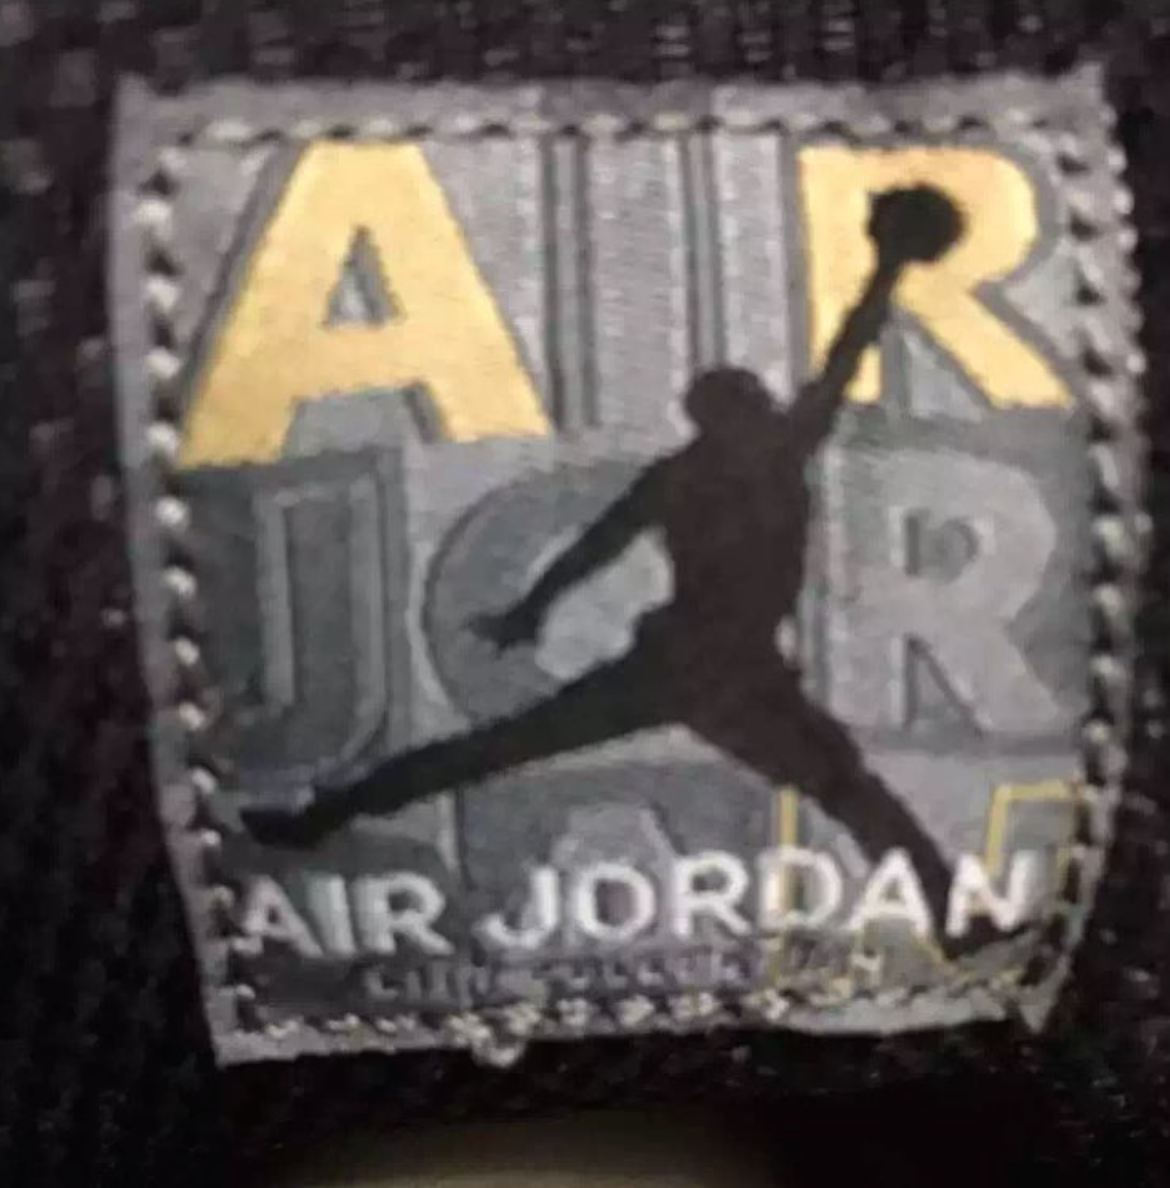 Air Jordan 10 NYC New York City Pack